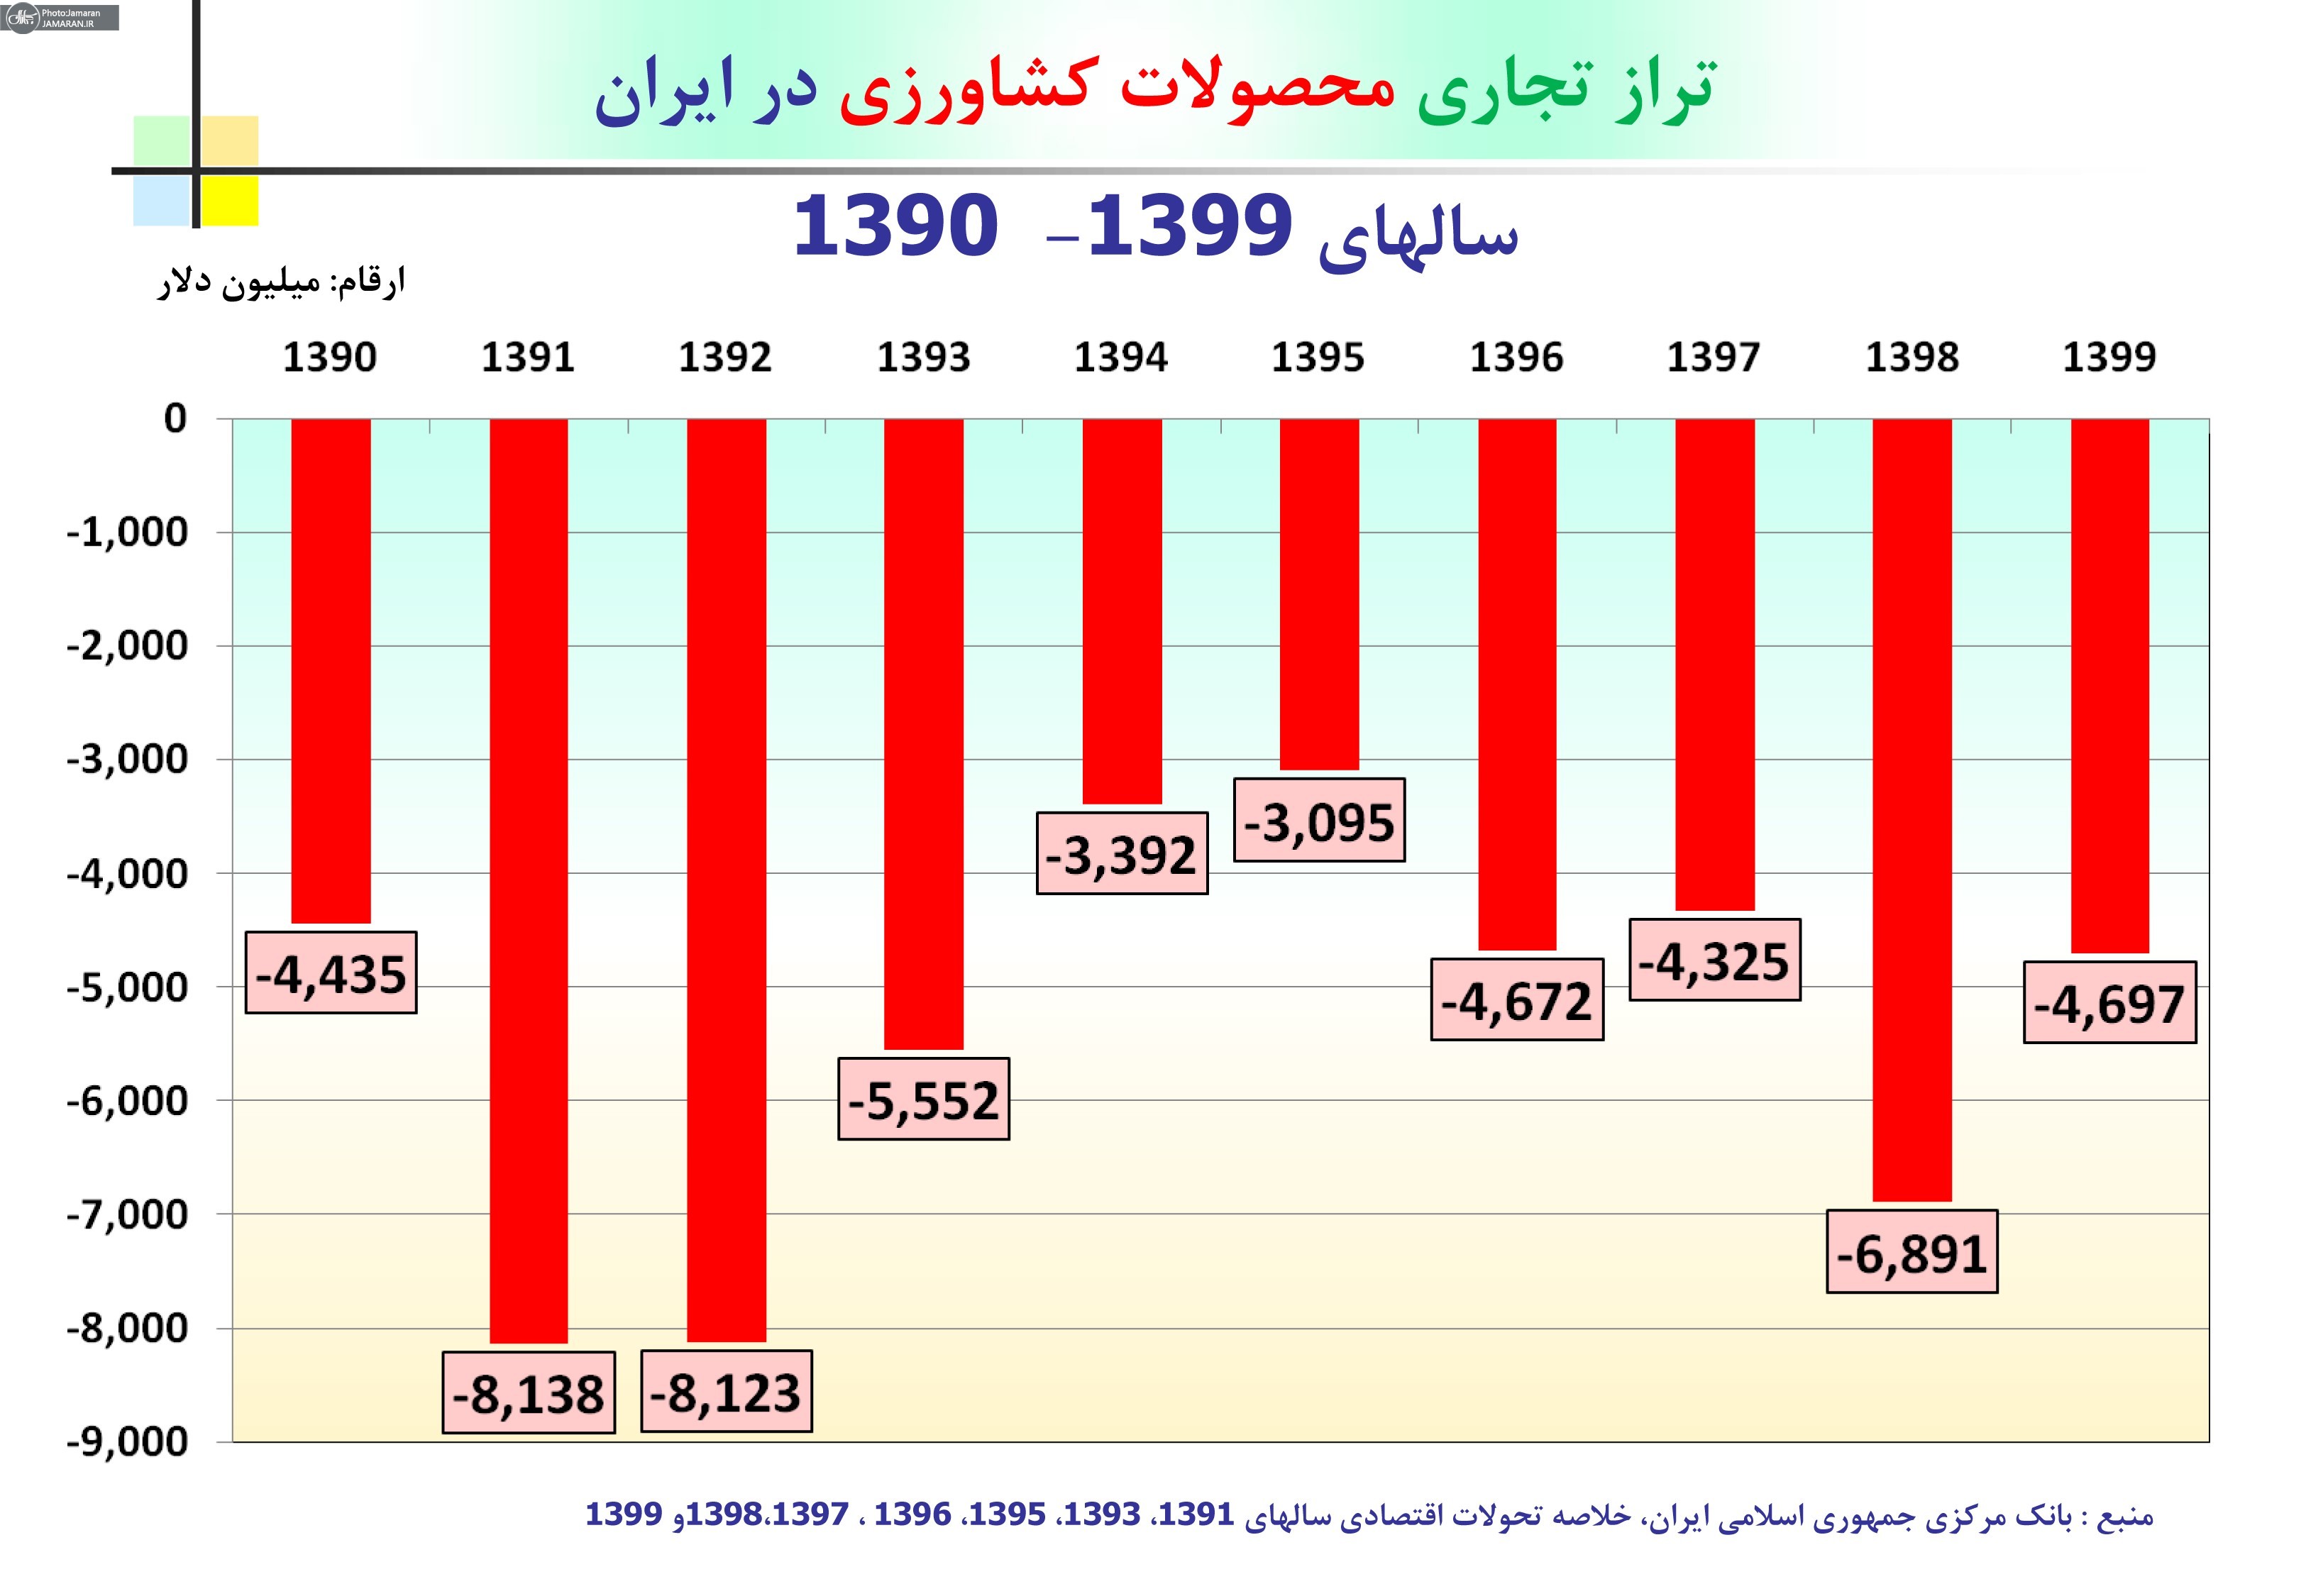 تراز تجاری محصولات کشاورزی در ایران